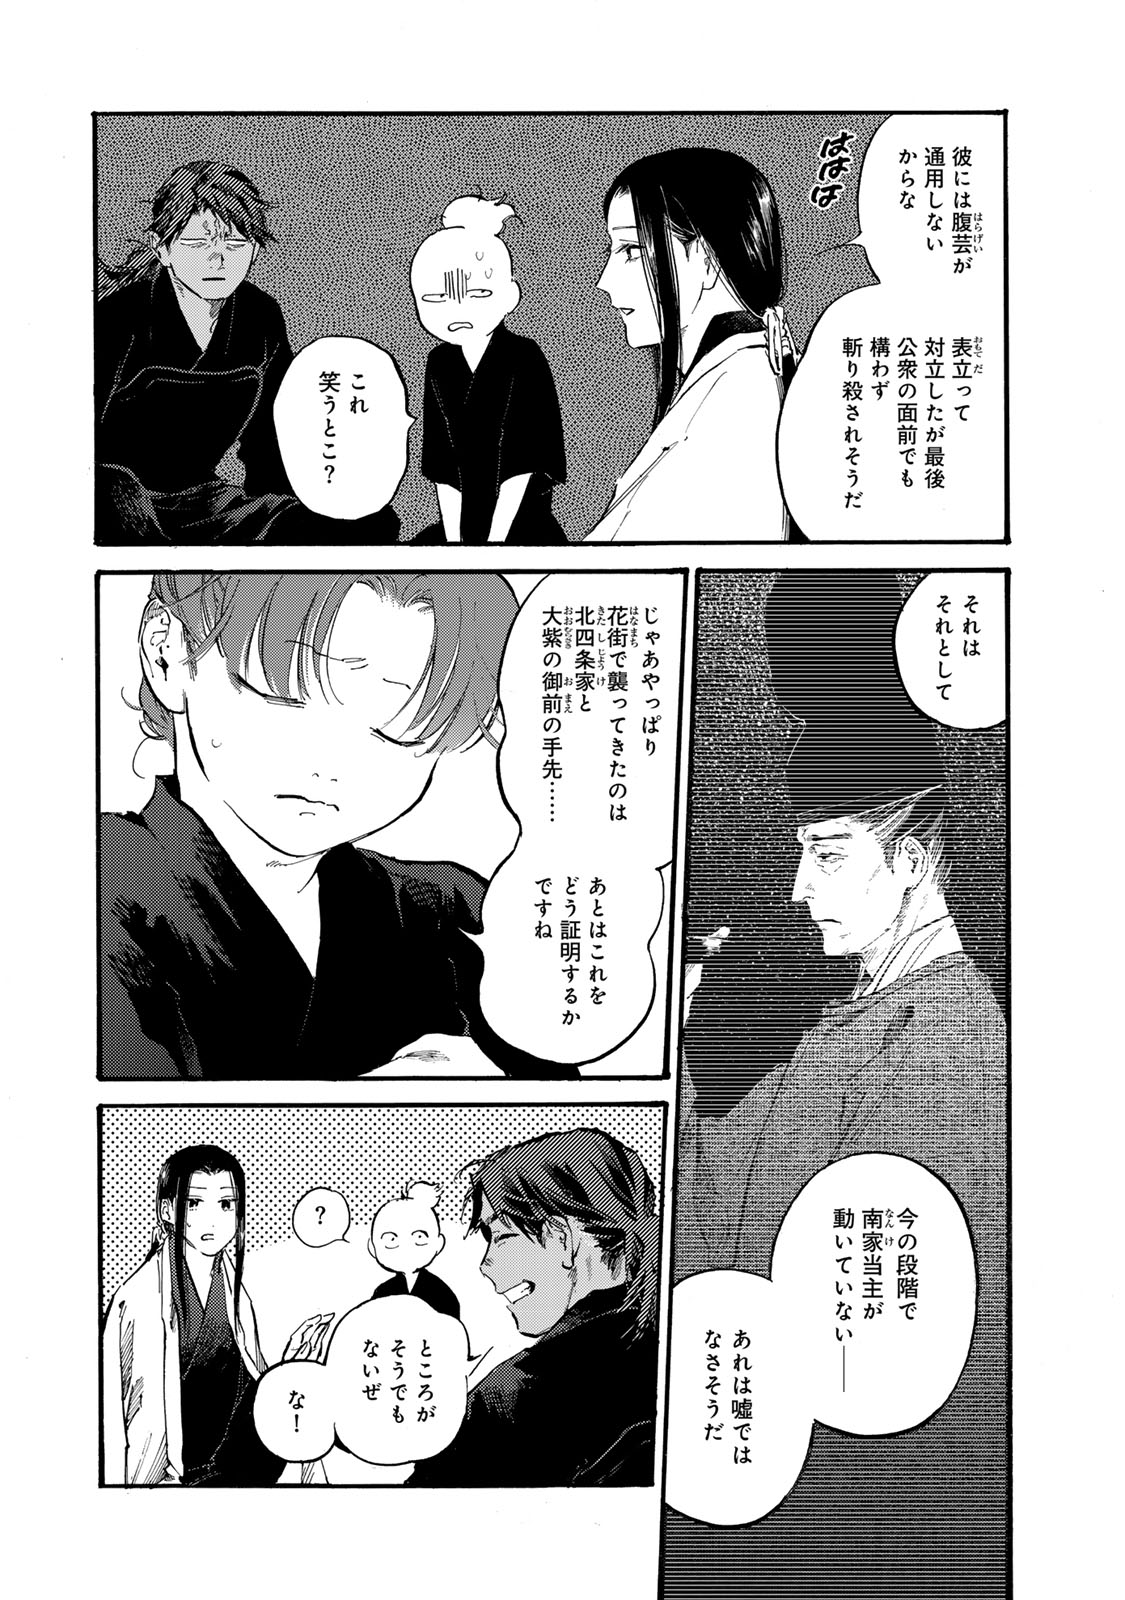 Karasu wa Aruji wo Erabanai - Chapter 39 - Page 13